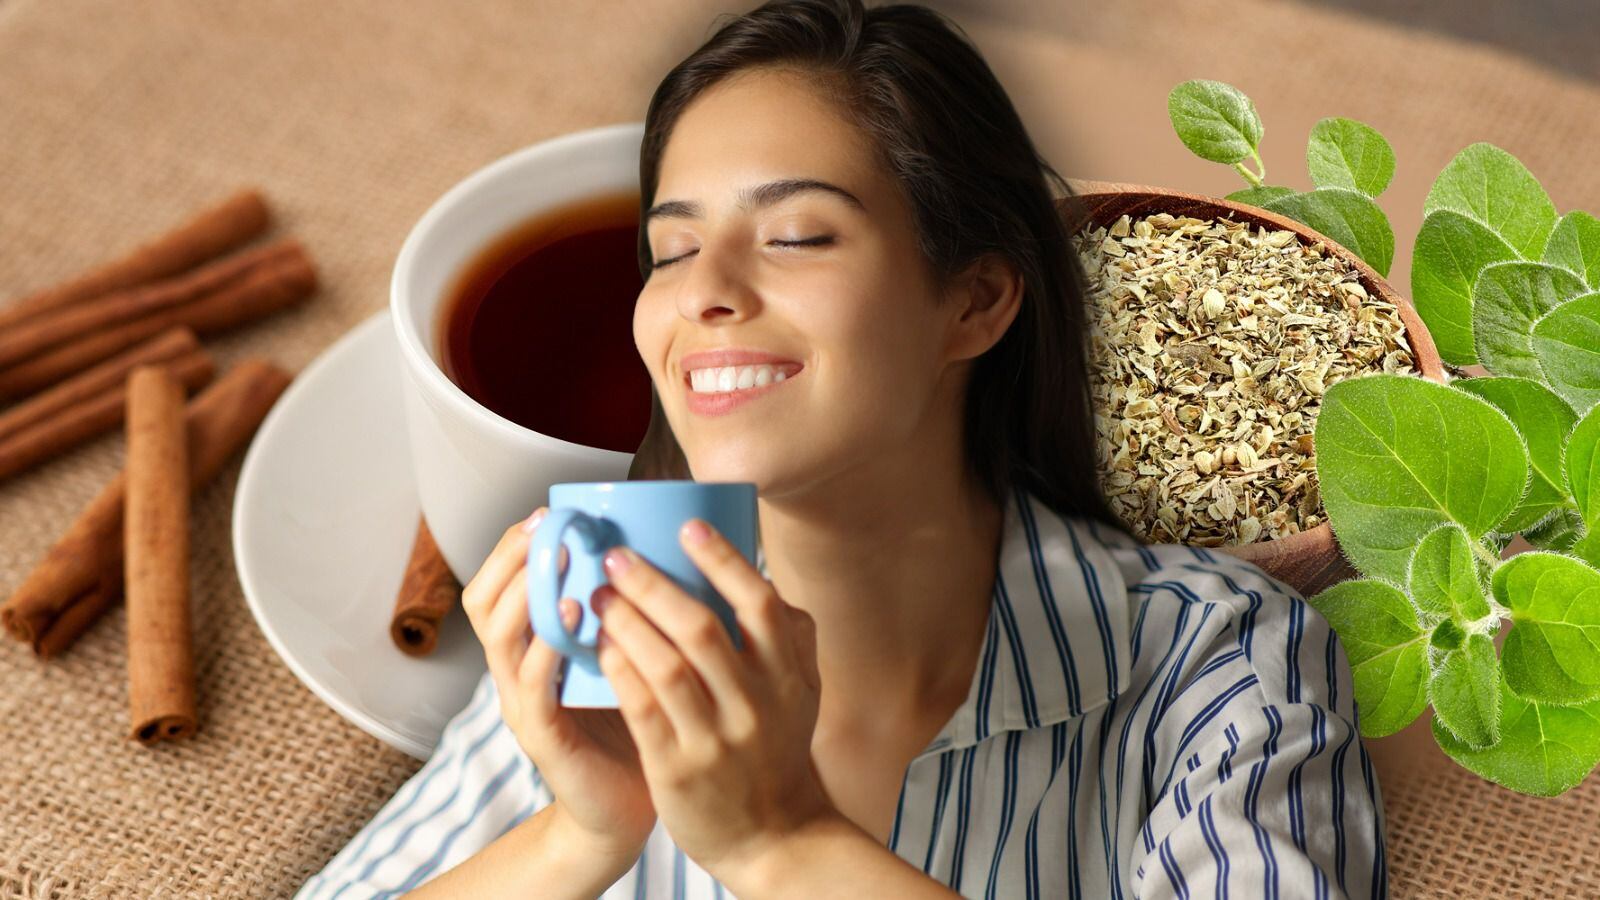 El té de canela con orégano es un remedio casero que se promueve para reforzar el sistema inmune, aunque poco se ha probado. (Fotoarte: Andrea López Trejo / El Financiero).